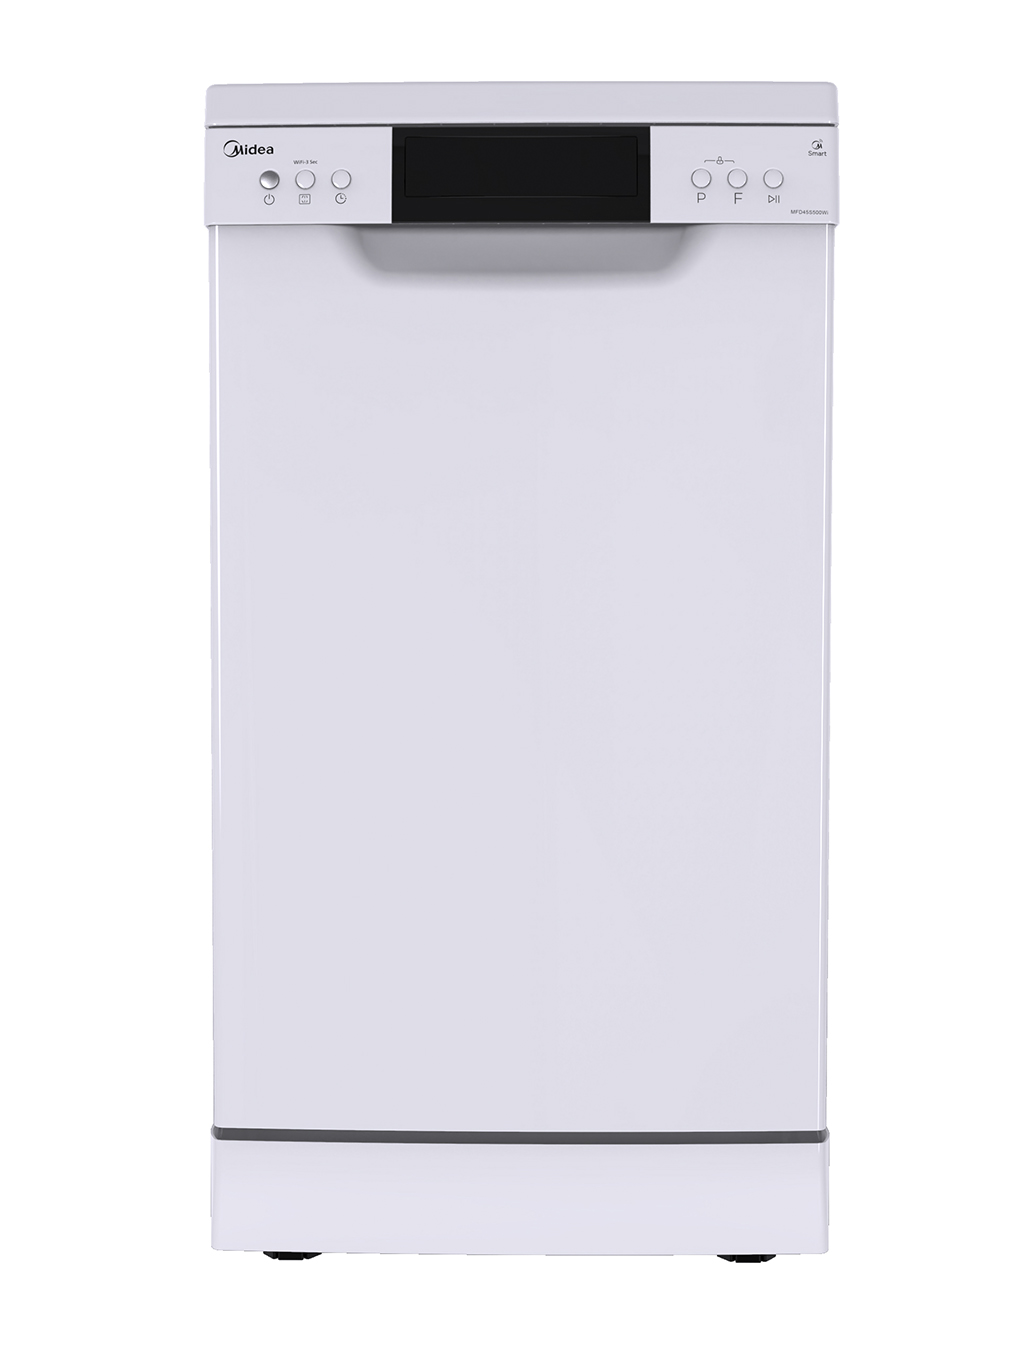 Посудомоечная машина Midea Mfd45s500wi, цвет белый 534129 - фото 1